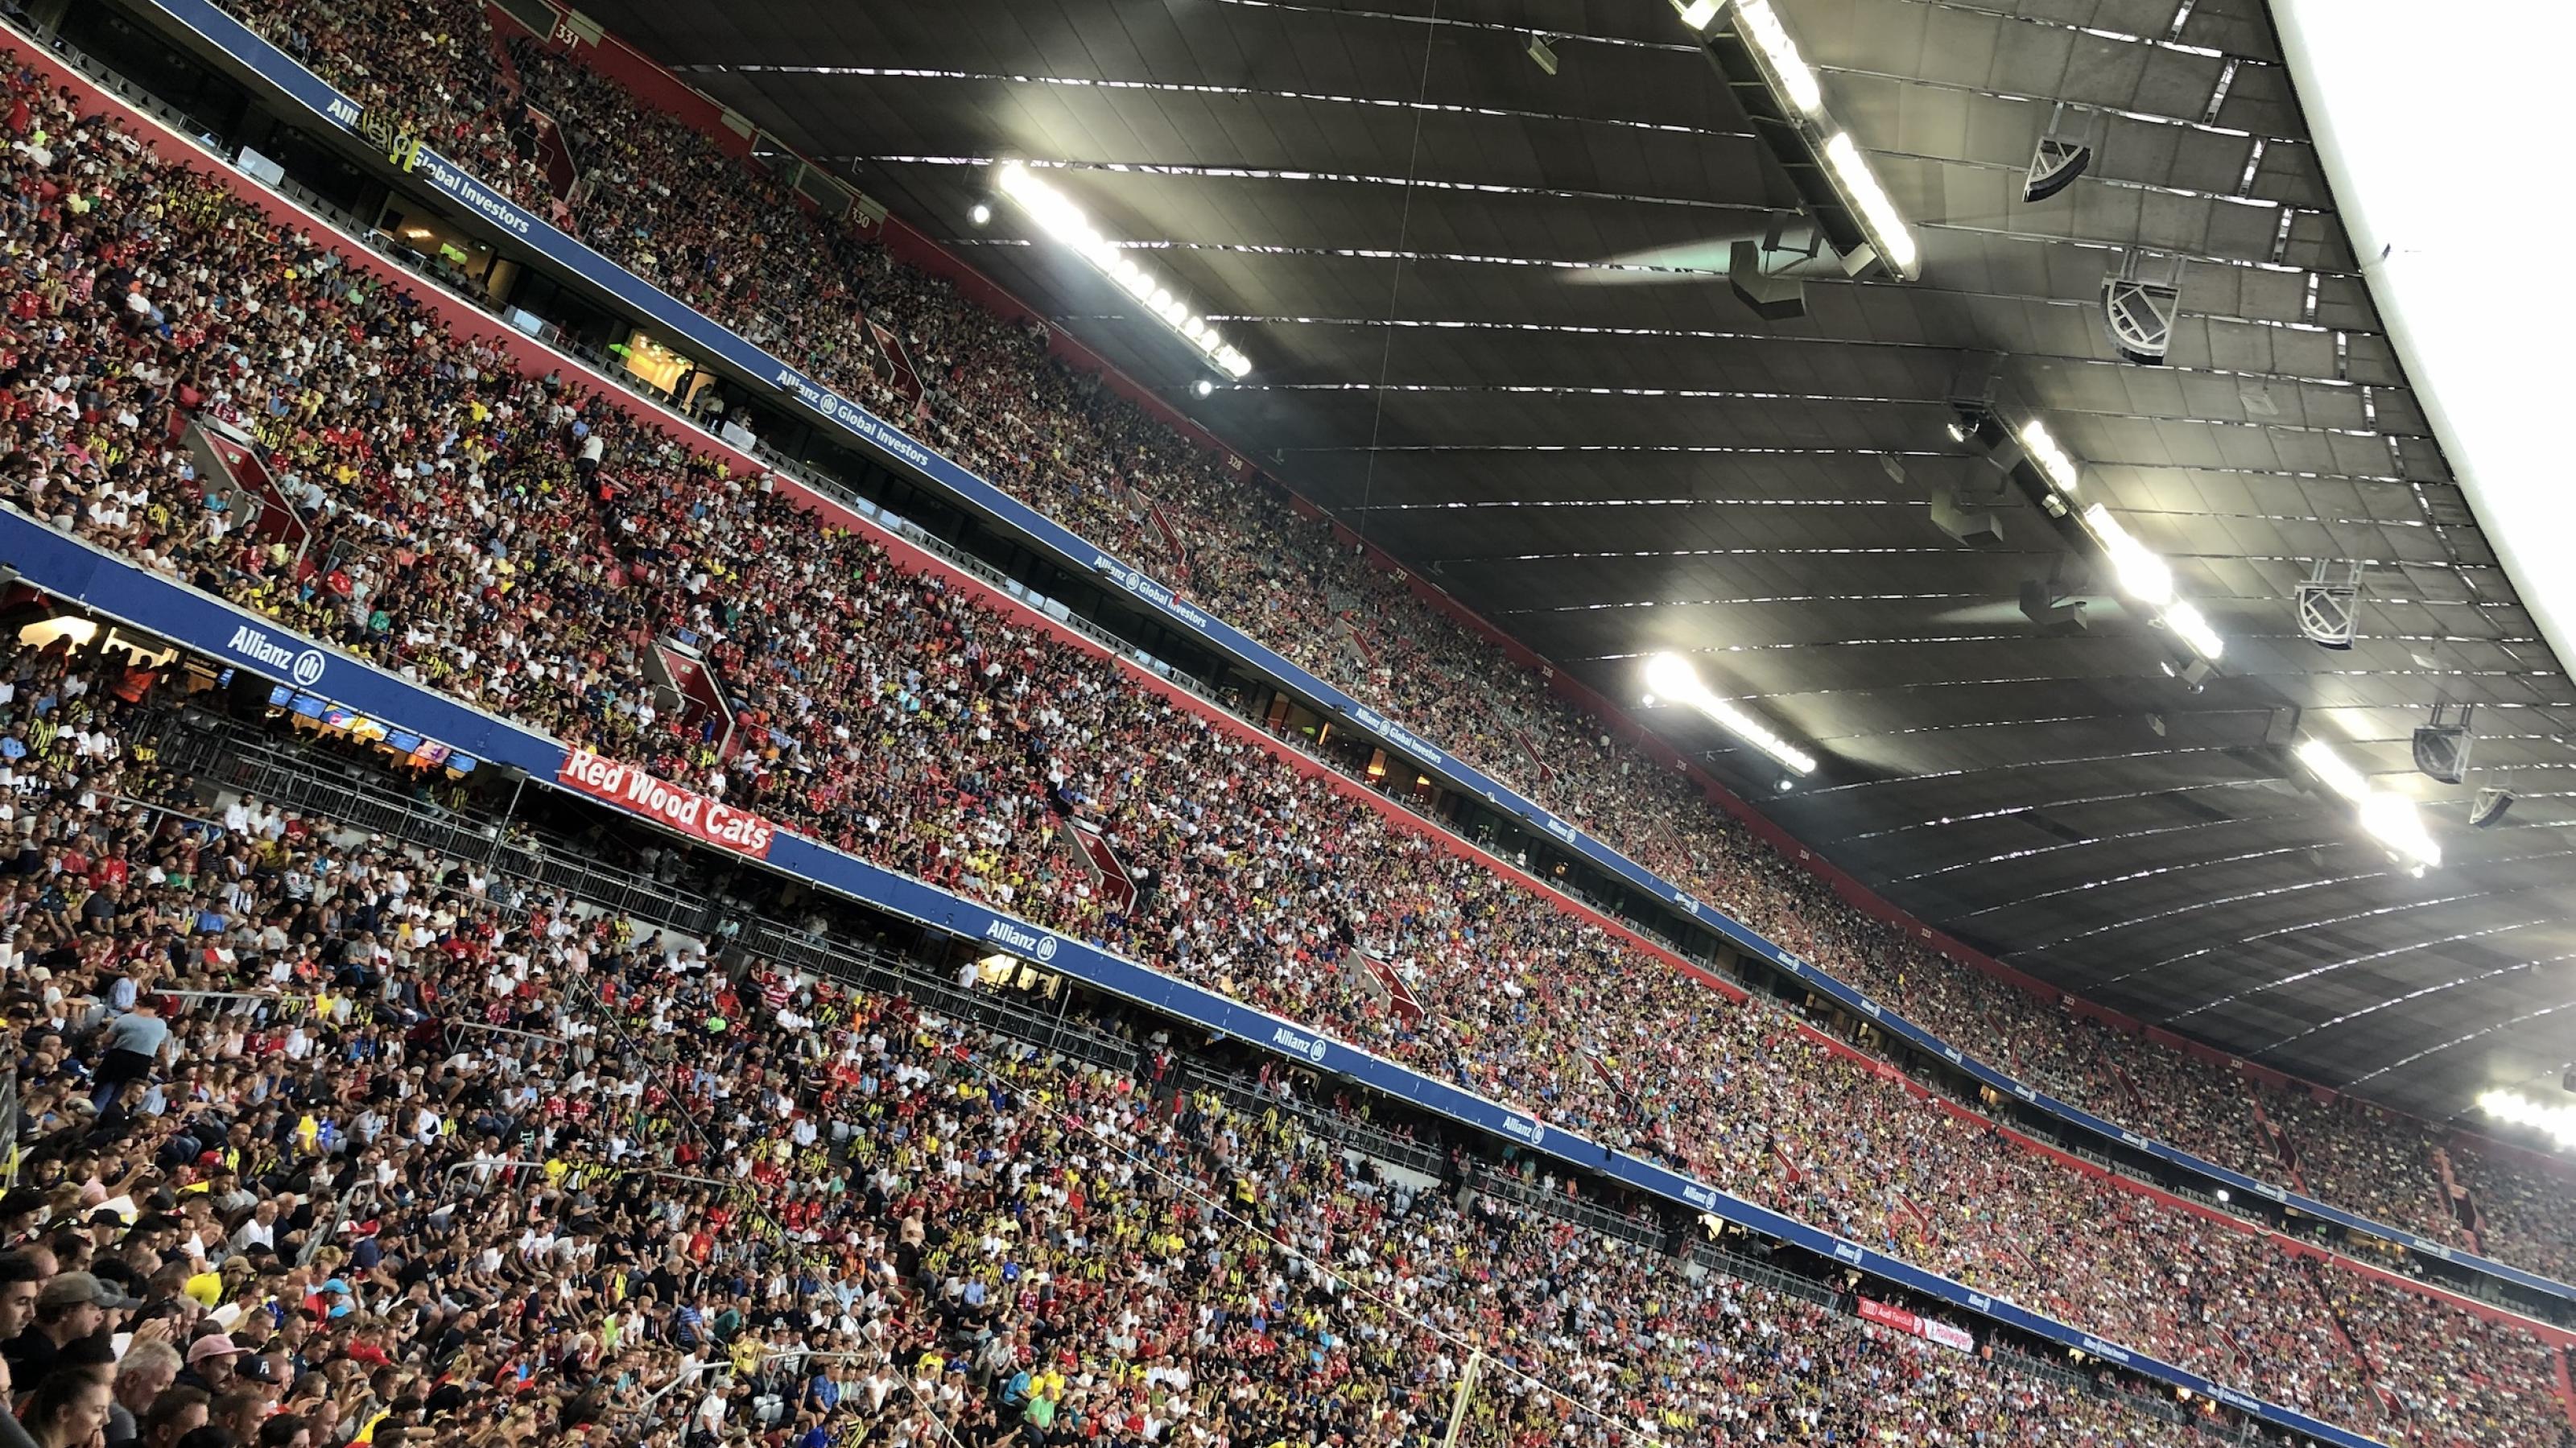 Zuschauerreihen der Allianz Arena in München mit einer riesigen Zahl von Menschen